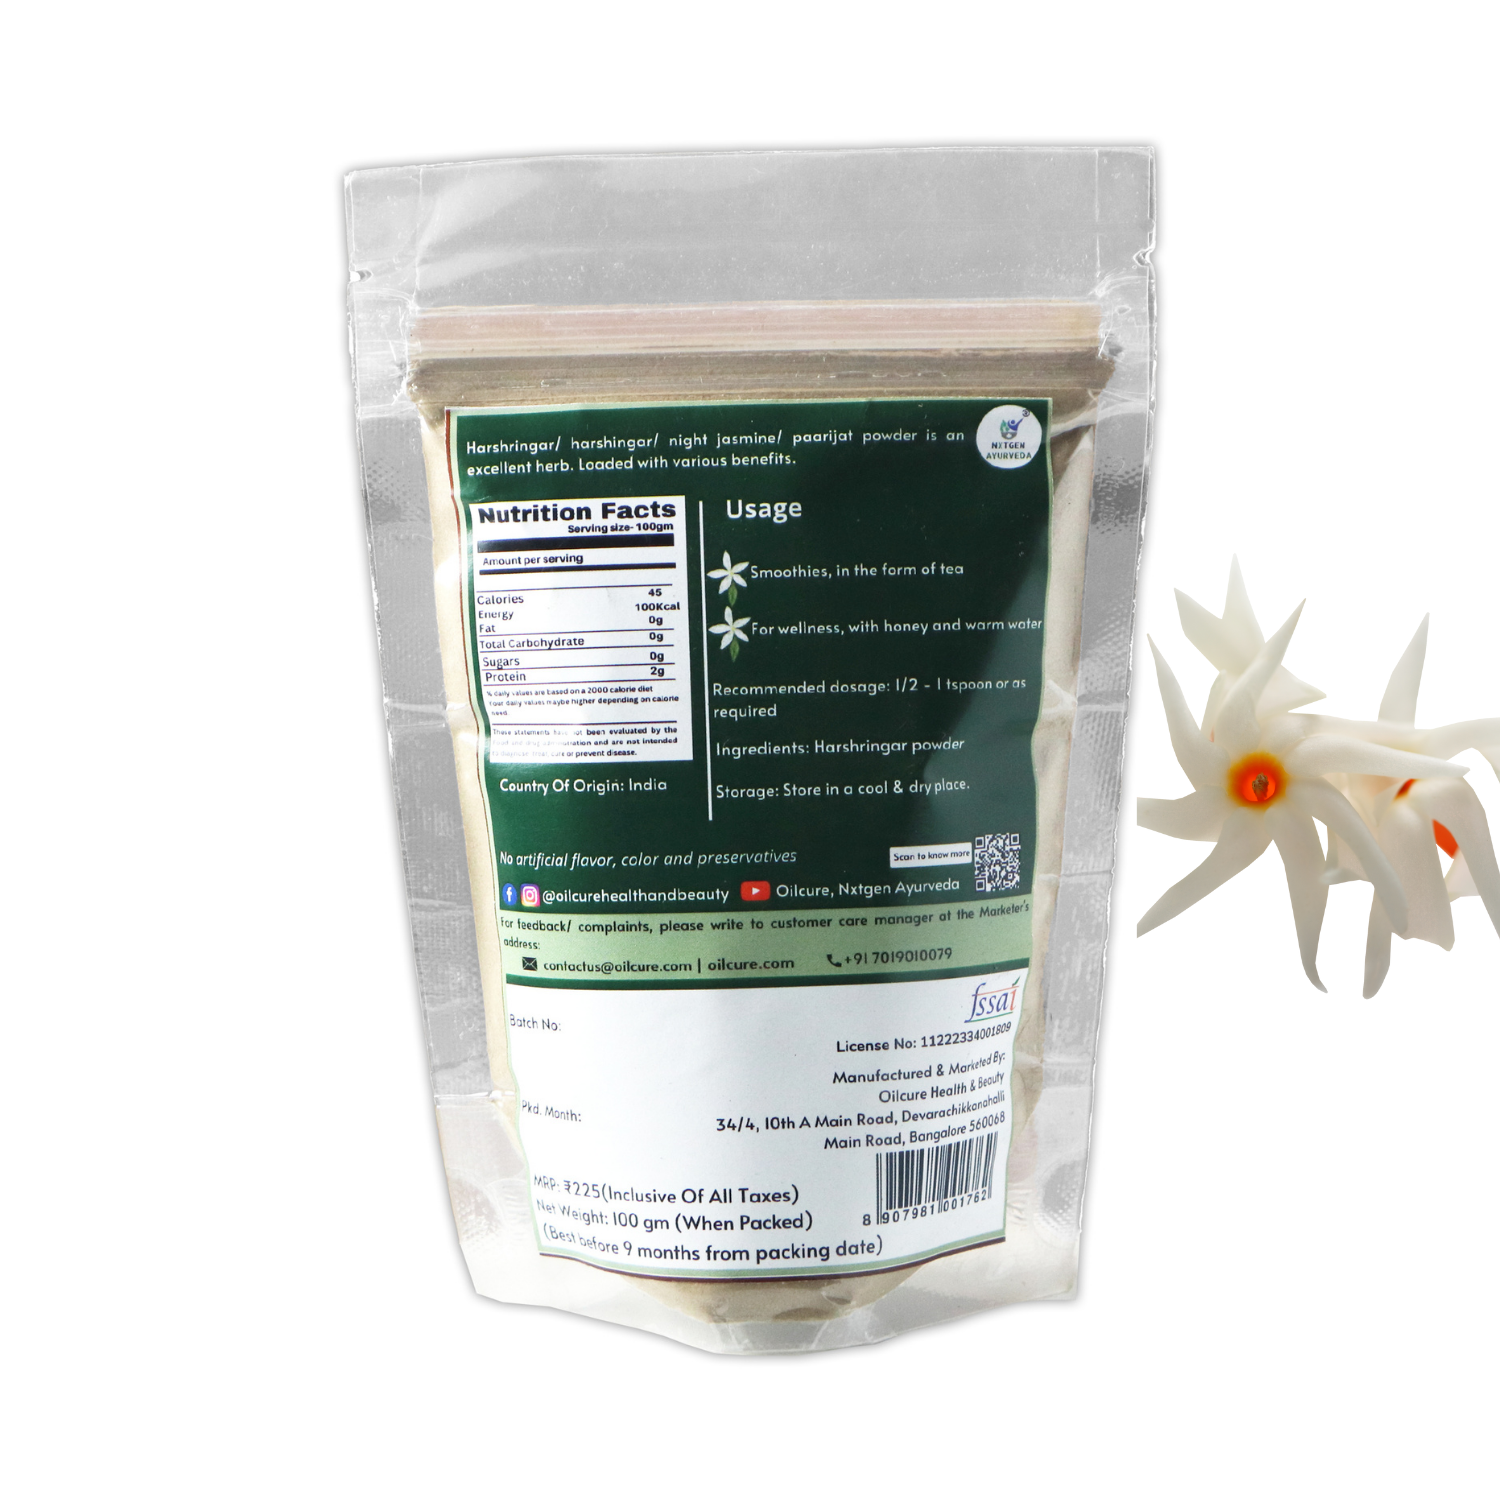 Nxtgen Ayurveda Harshringar (Paarijat) Leaves Powder - 100 gms (Pack of 2)